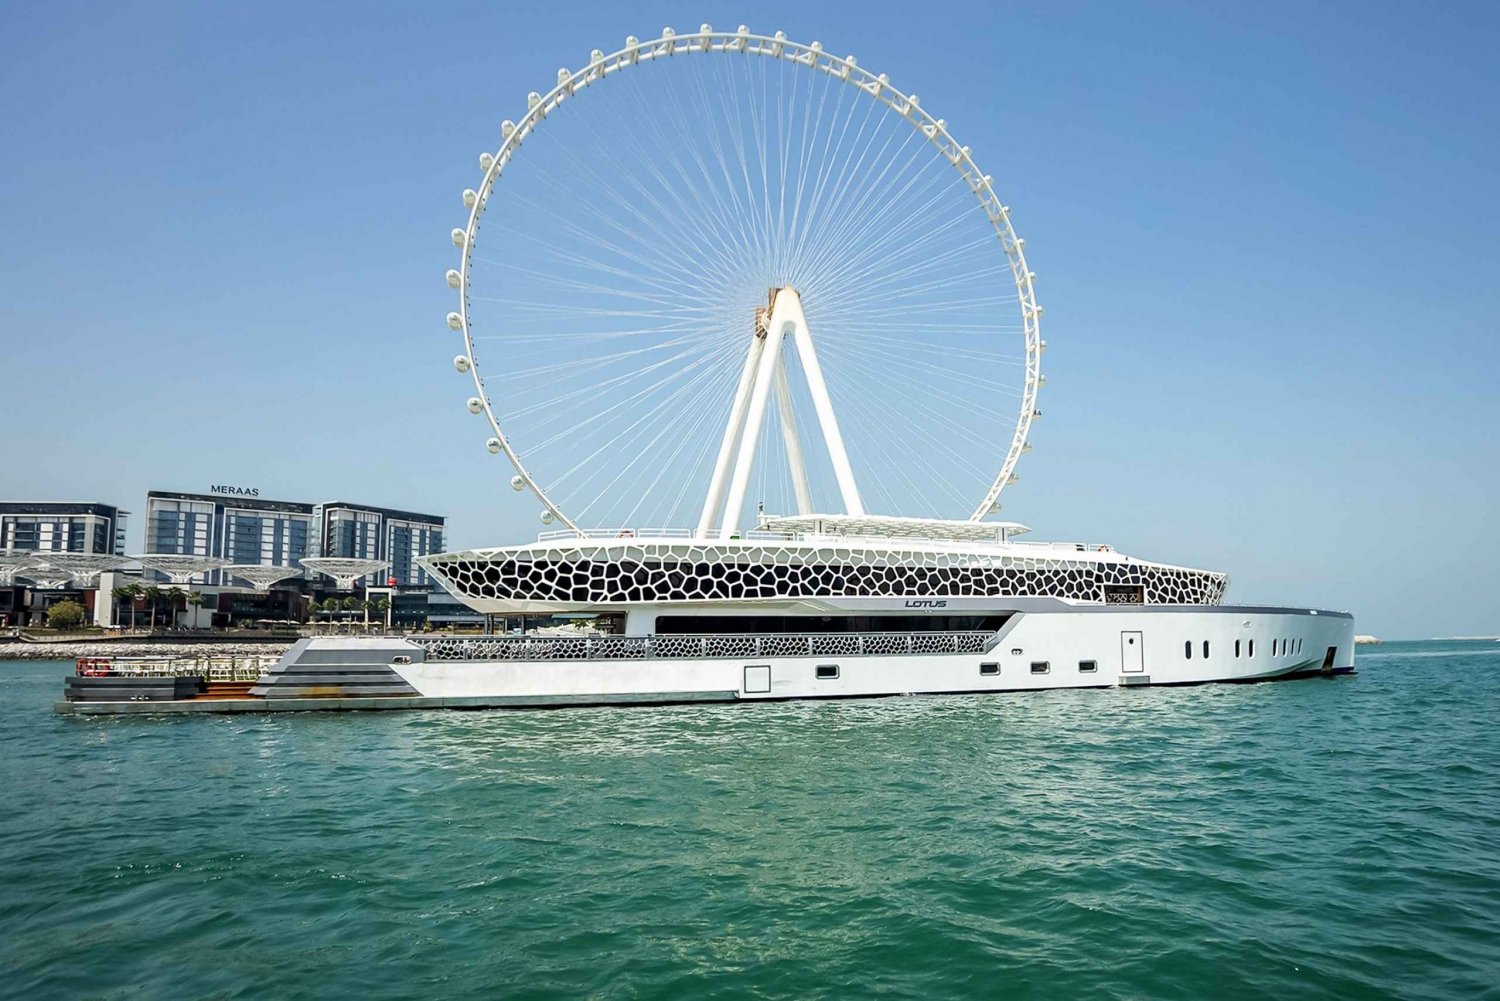 Dubái: crucero en megayate de lujo con cena tipo bufé